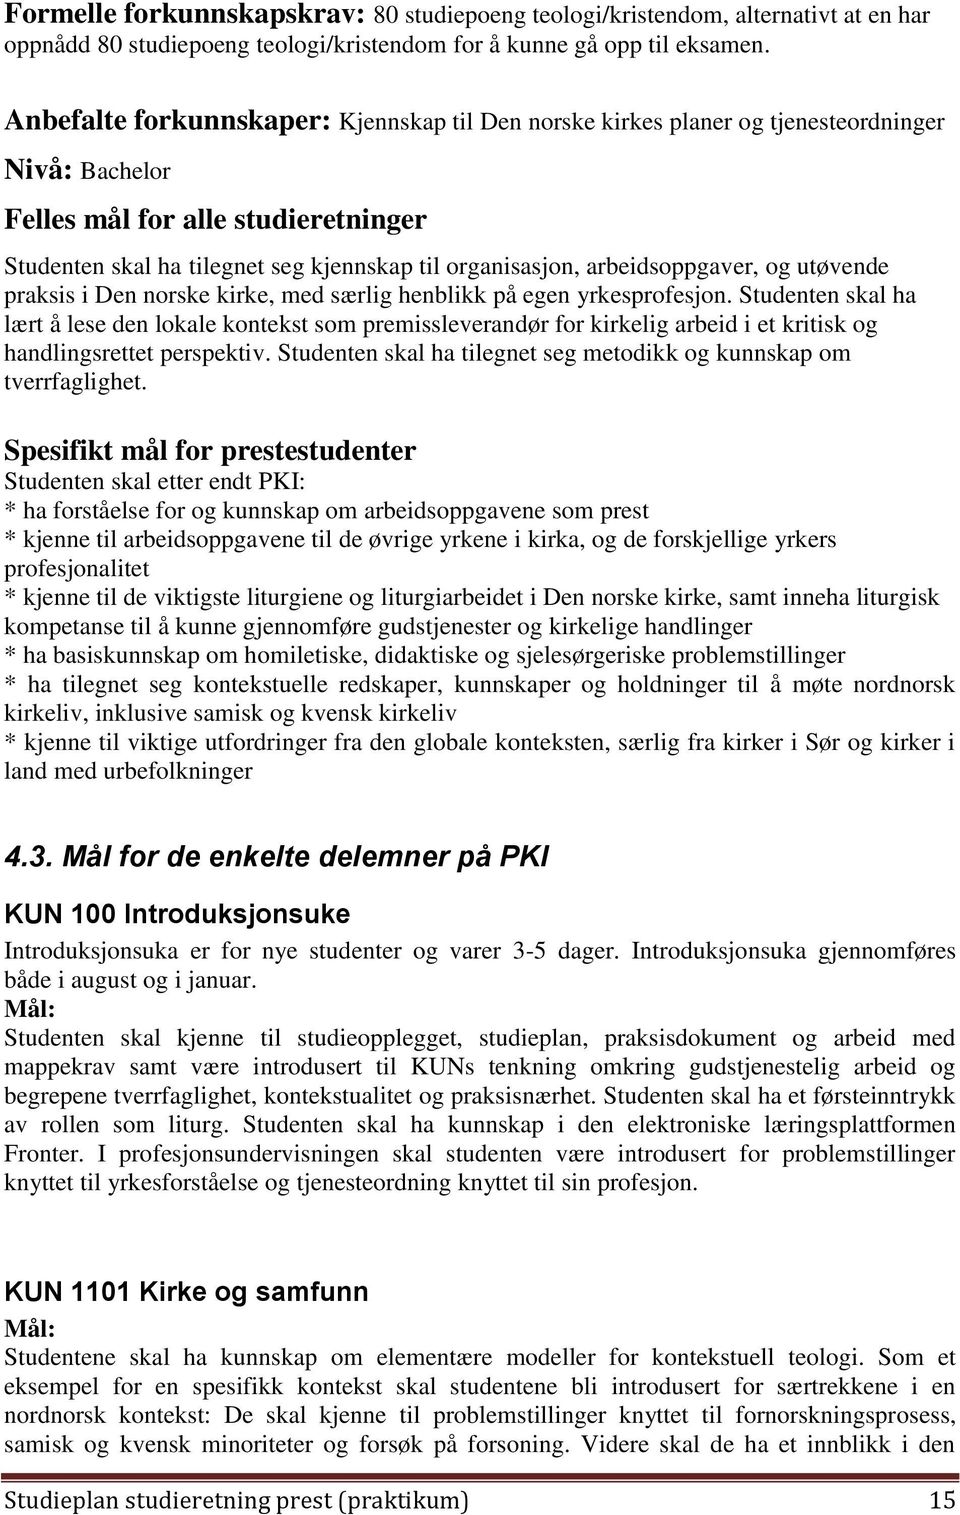 arbeidsoppgaver, og utøvende praksis i Den norske kirke, med særlig henblikk på egen yrkesprofesjon.